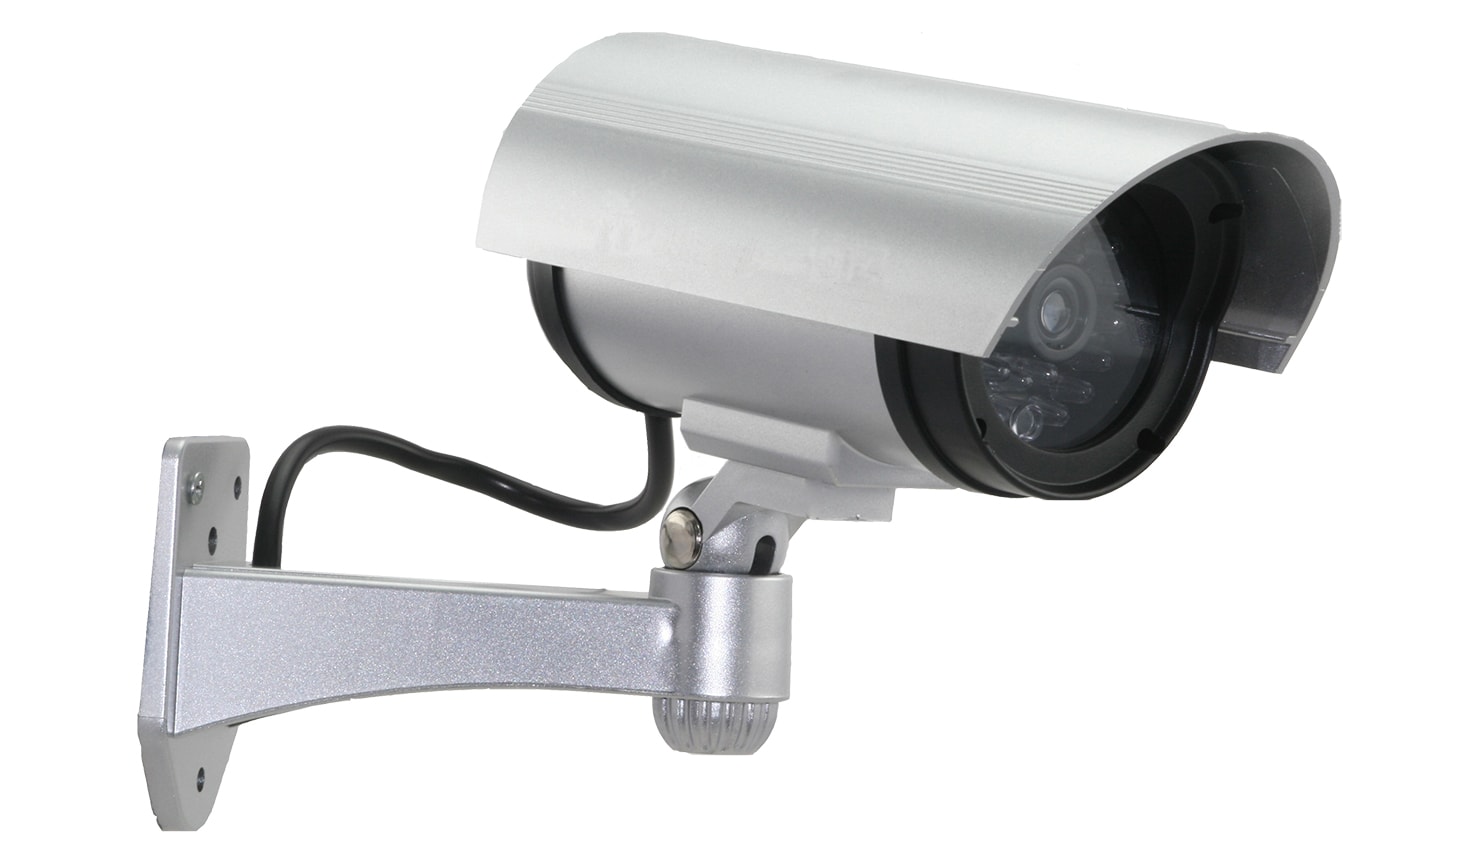 Муляж камеры видеонаблюдения моторизированный со встроенным детектором движения и антенной.